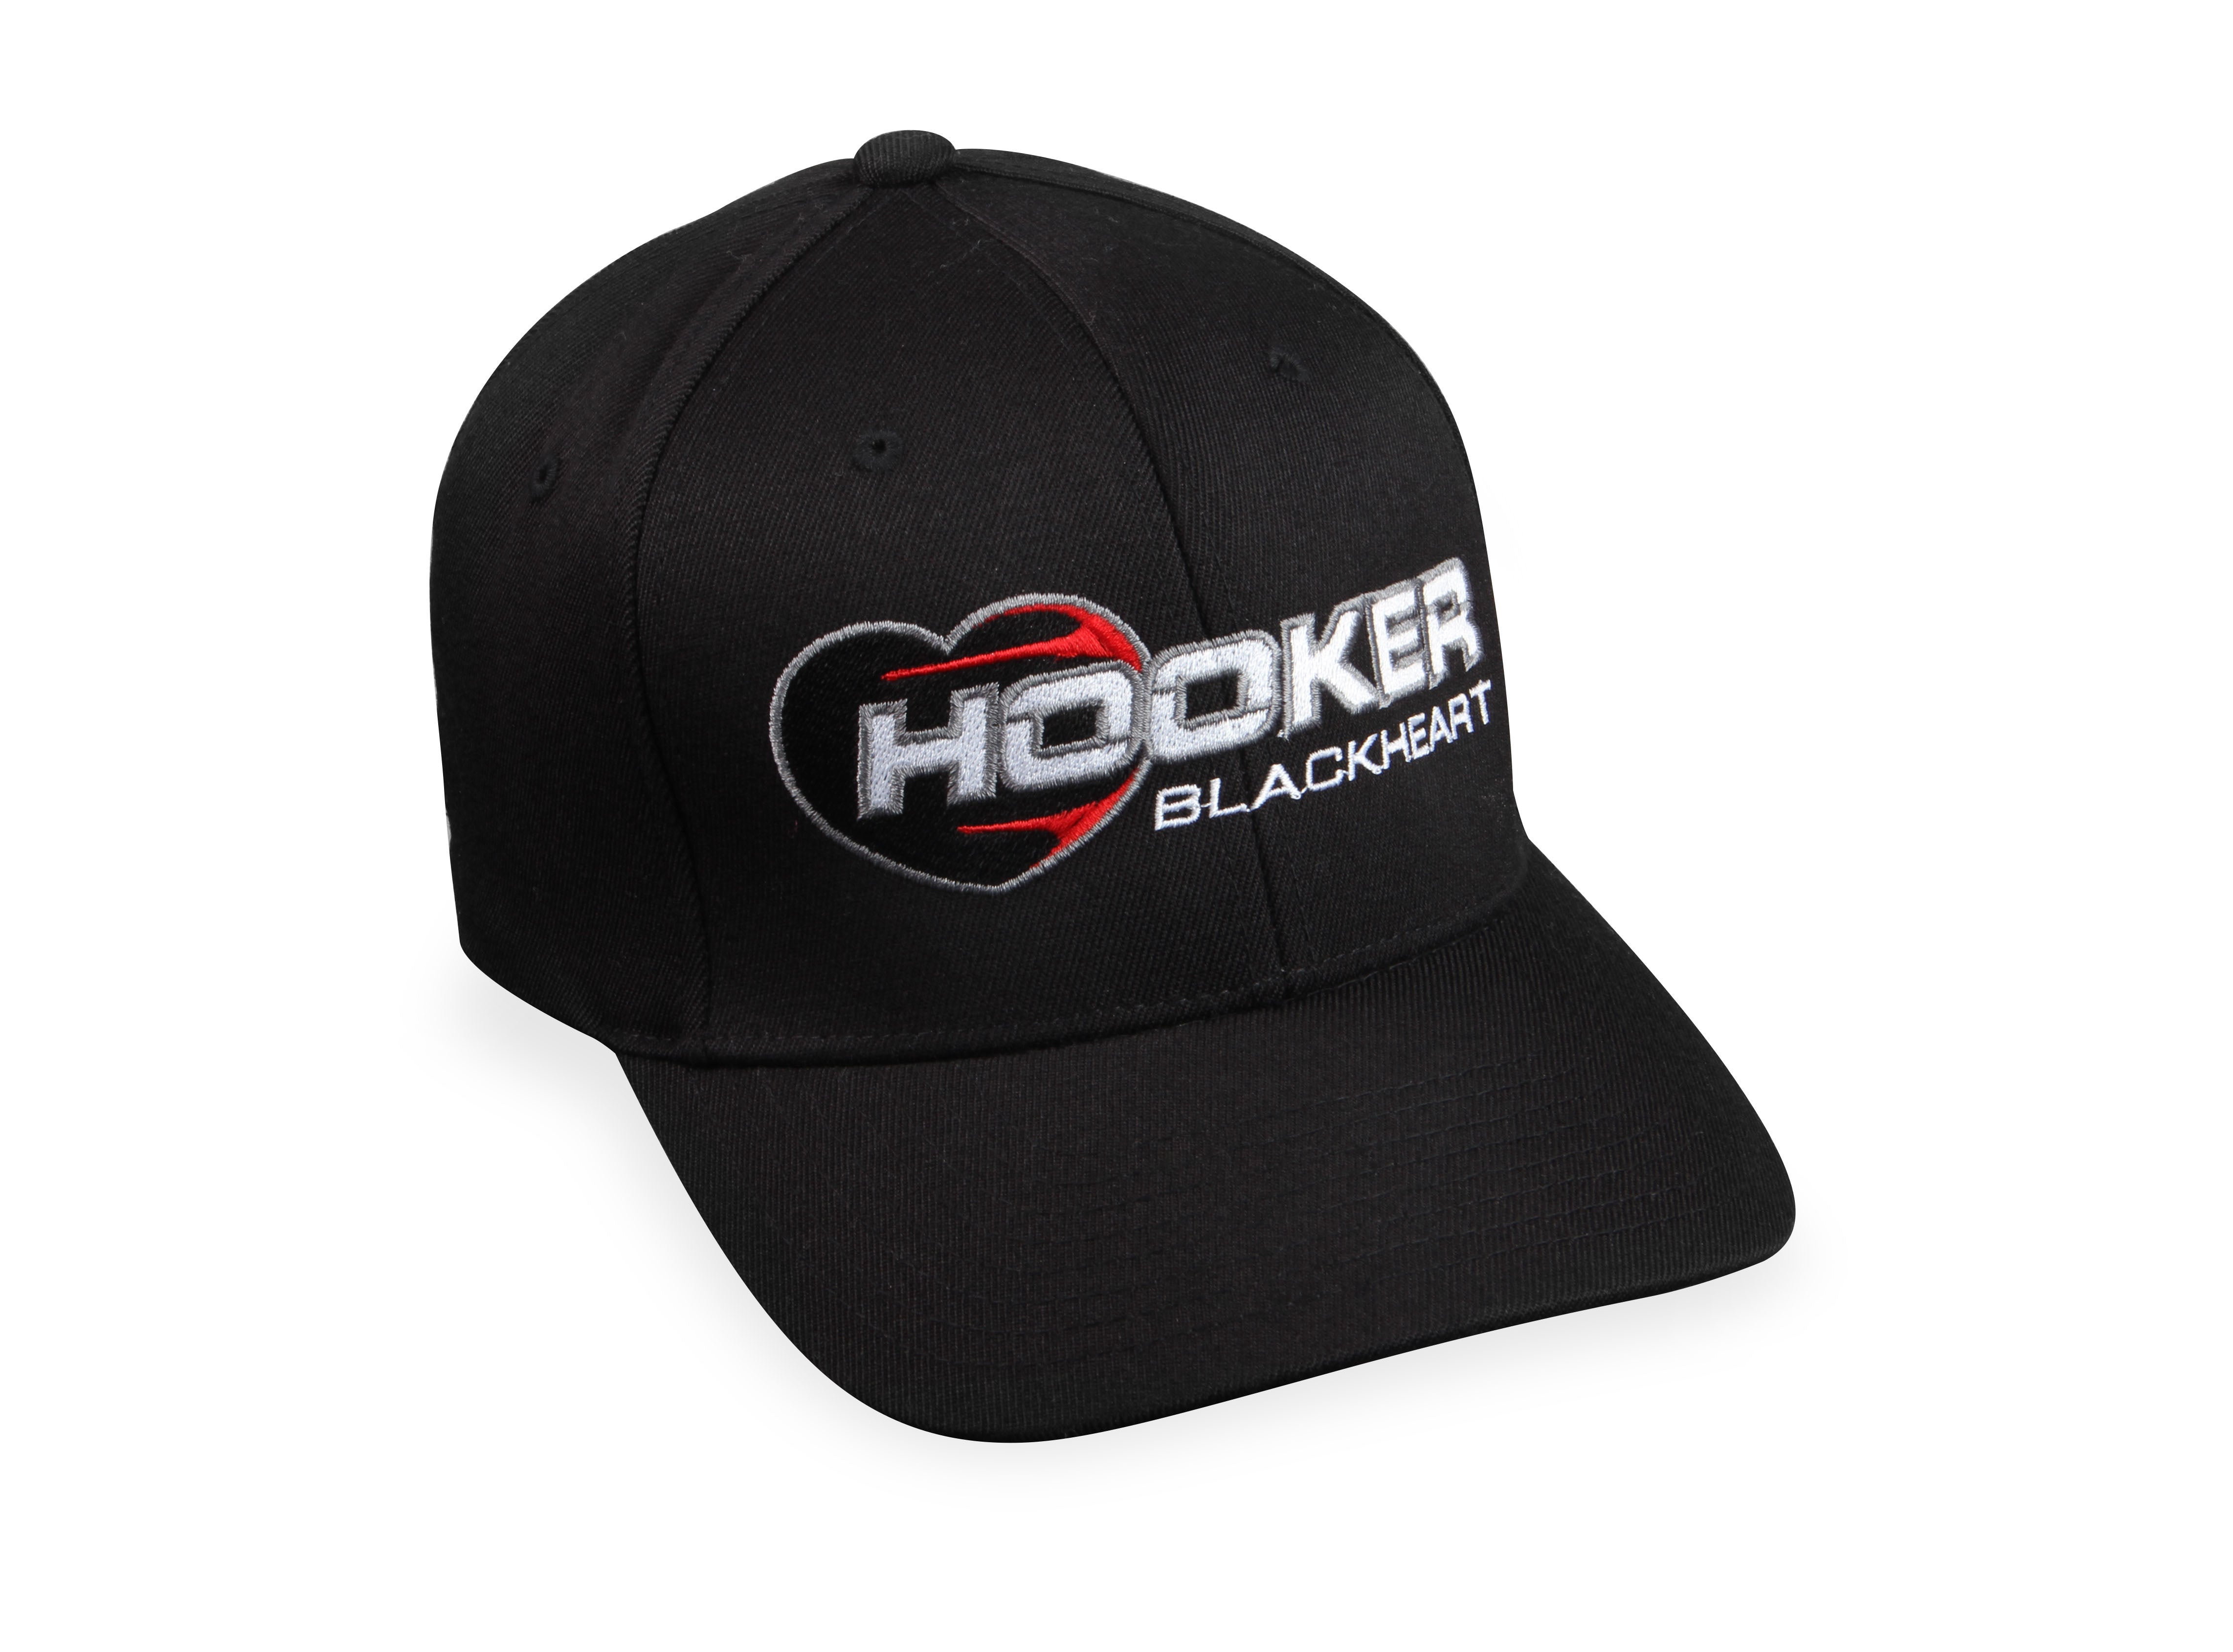 Hooker BlackHeart Baseball Cap 10158-SMMDHKR